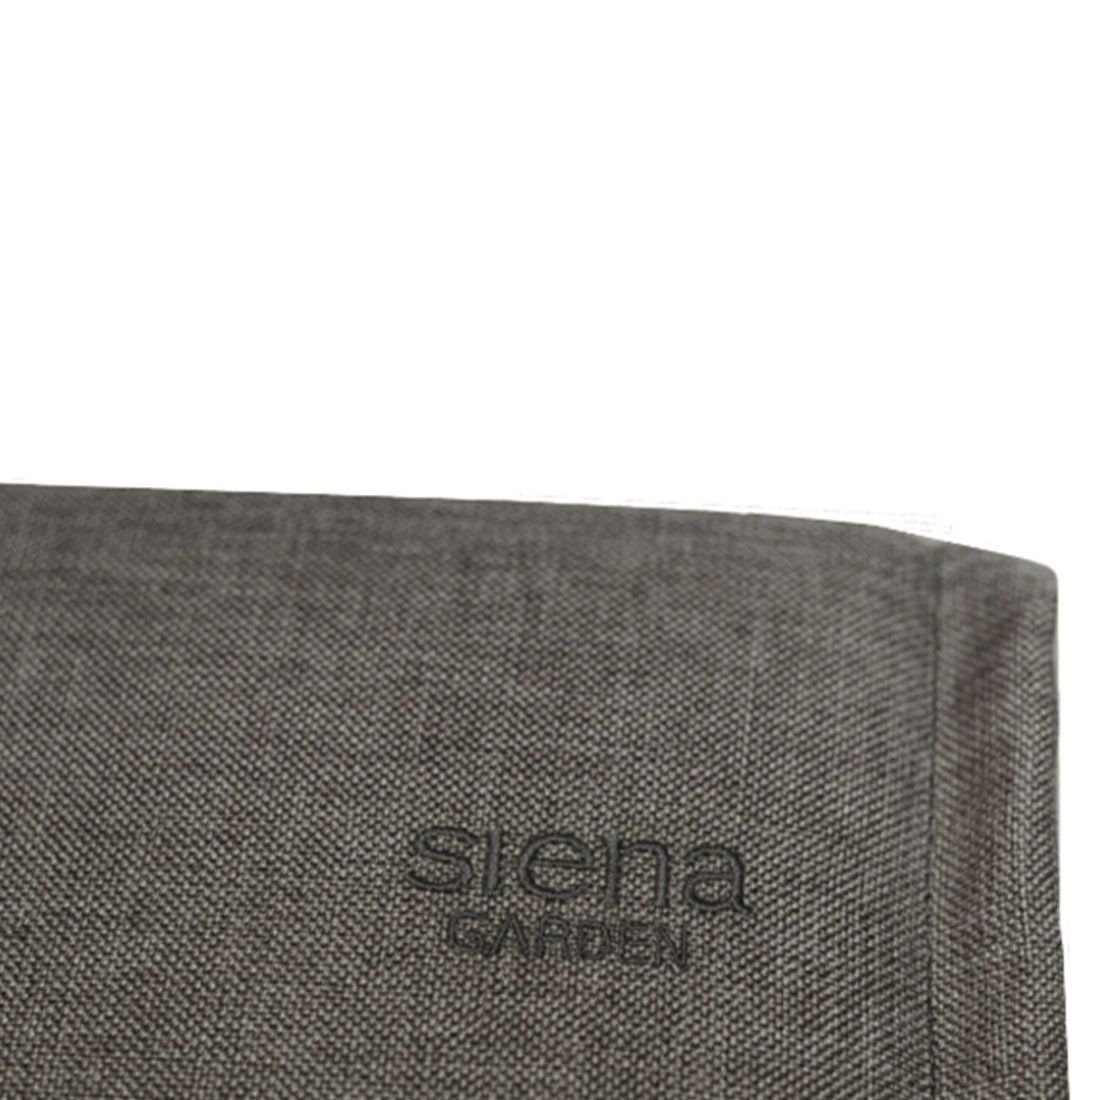 Siena Garden Stella Standardauflage 200x58x6cm Olefin